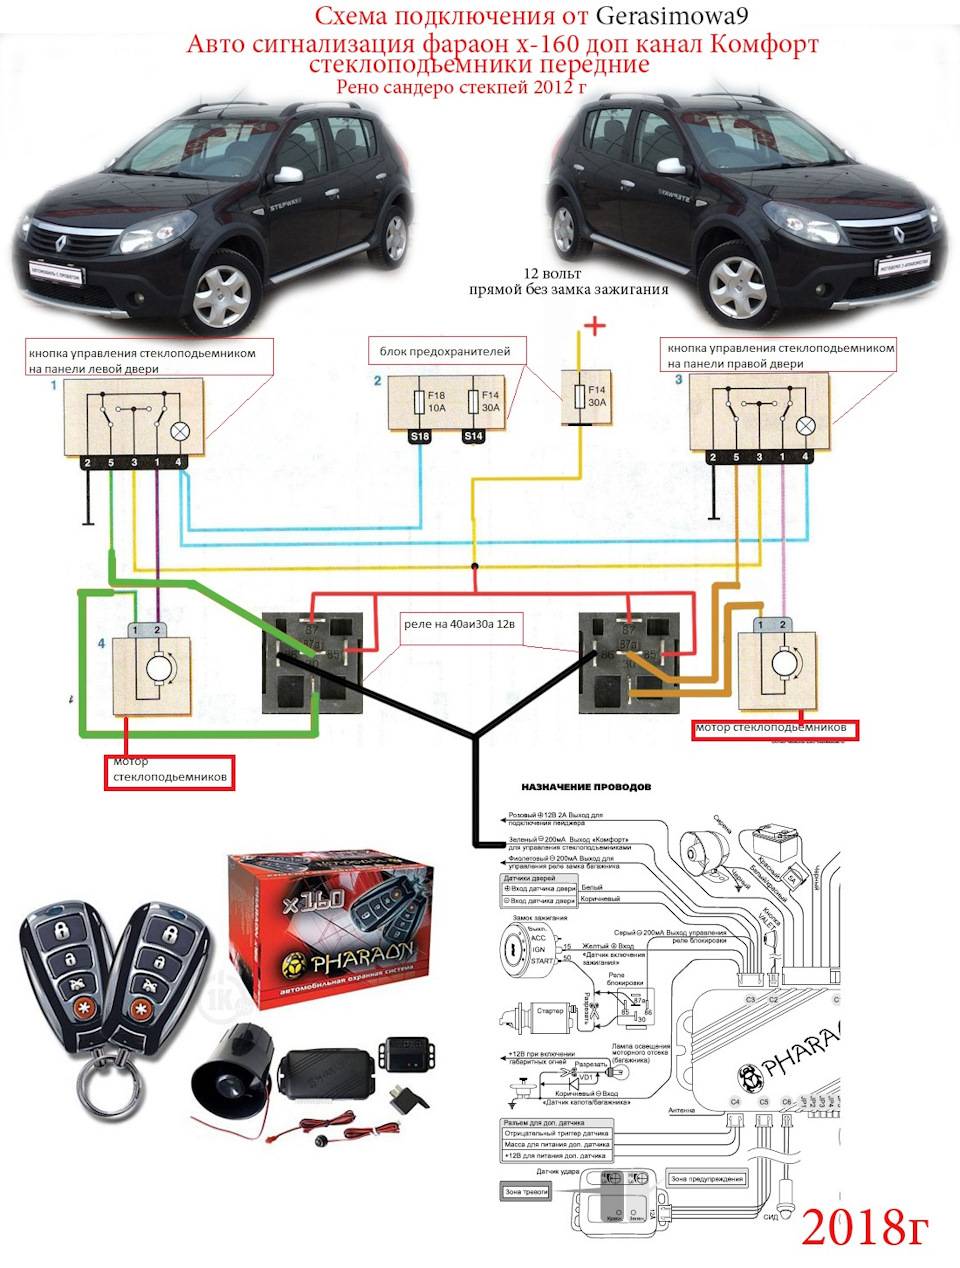 Распространённые точки подключения автомобильной сигнализации (на примере старлайн)